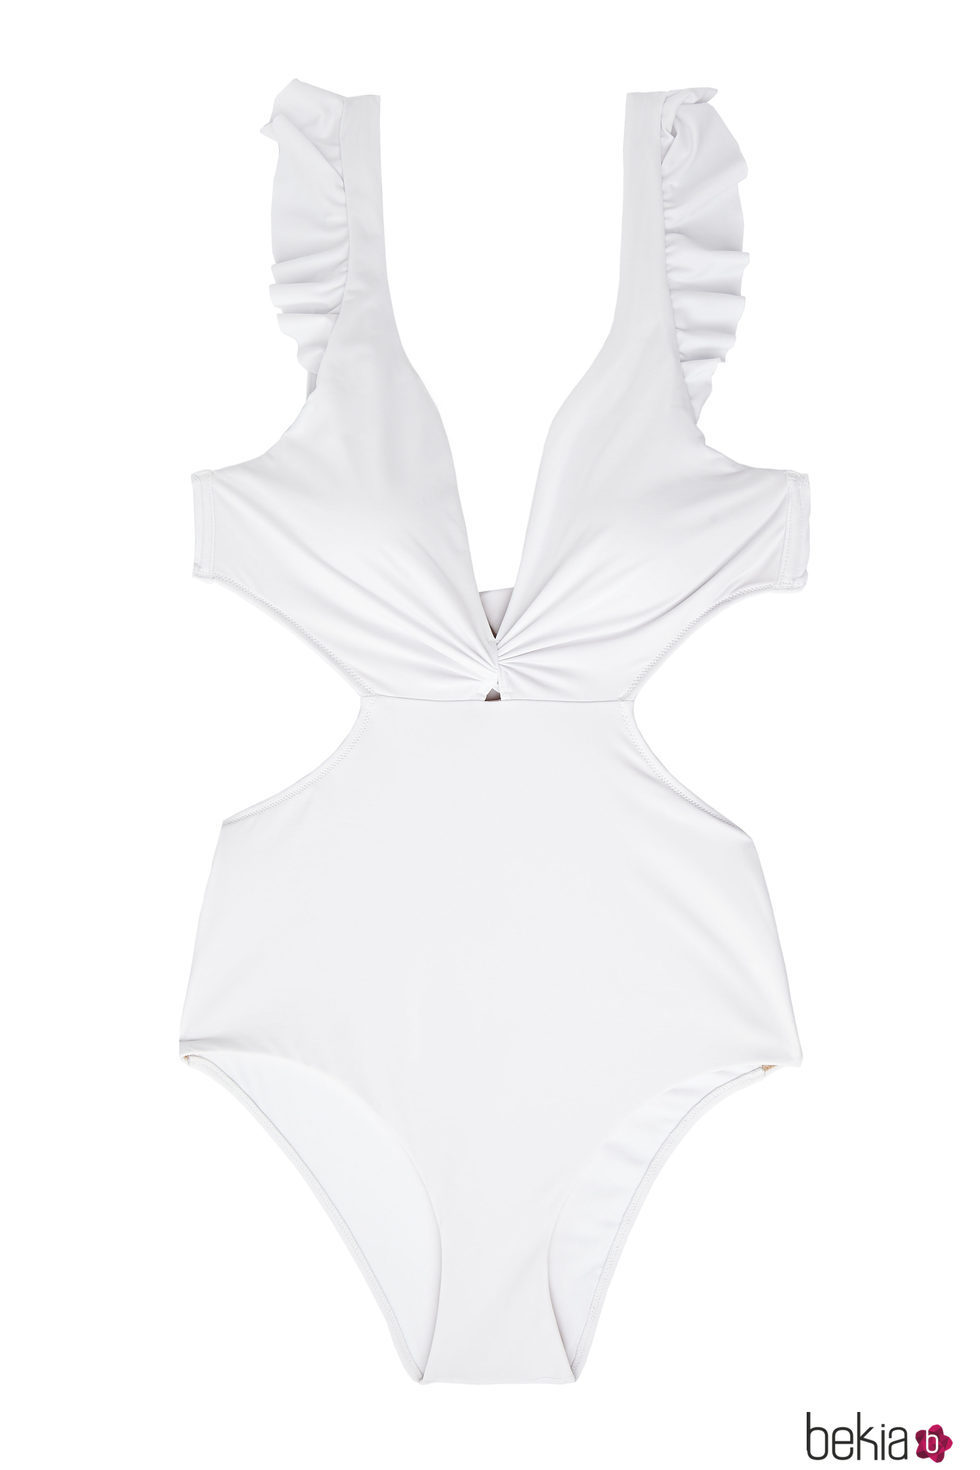 Traje de baño blanco con mangas volante de la colección Beachwear SS18 de Oysho